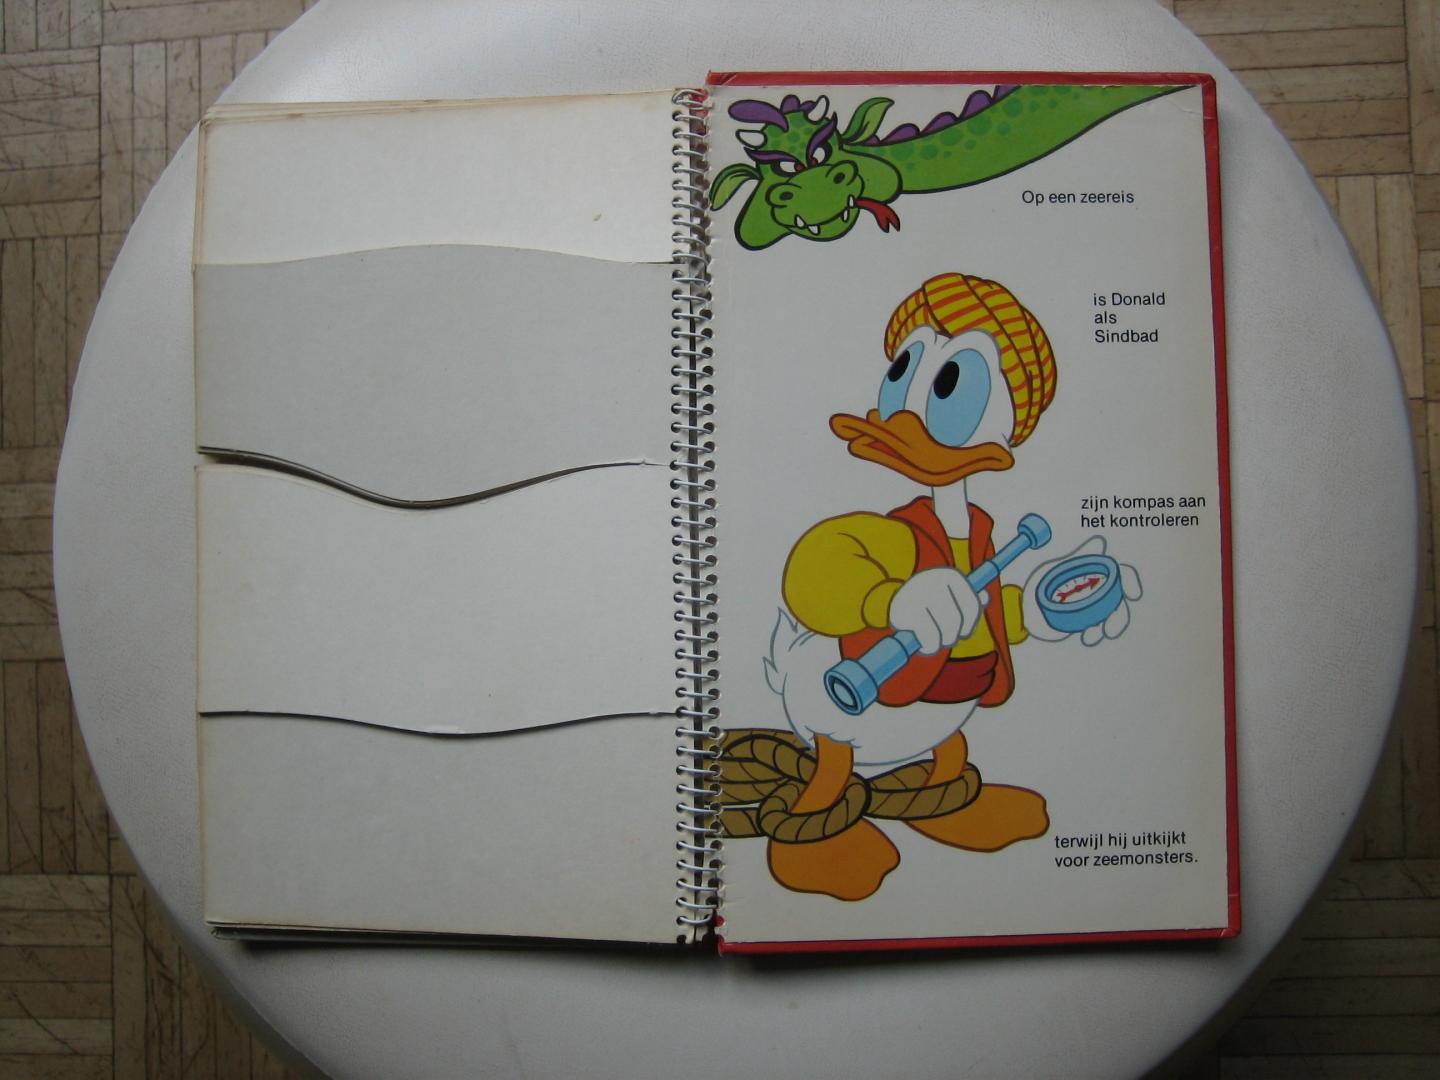 Walt Disney - Donald Duck de held / Zeer oud Donald Duck-boek